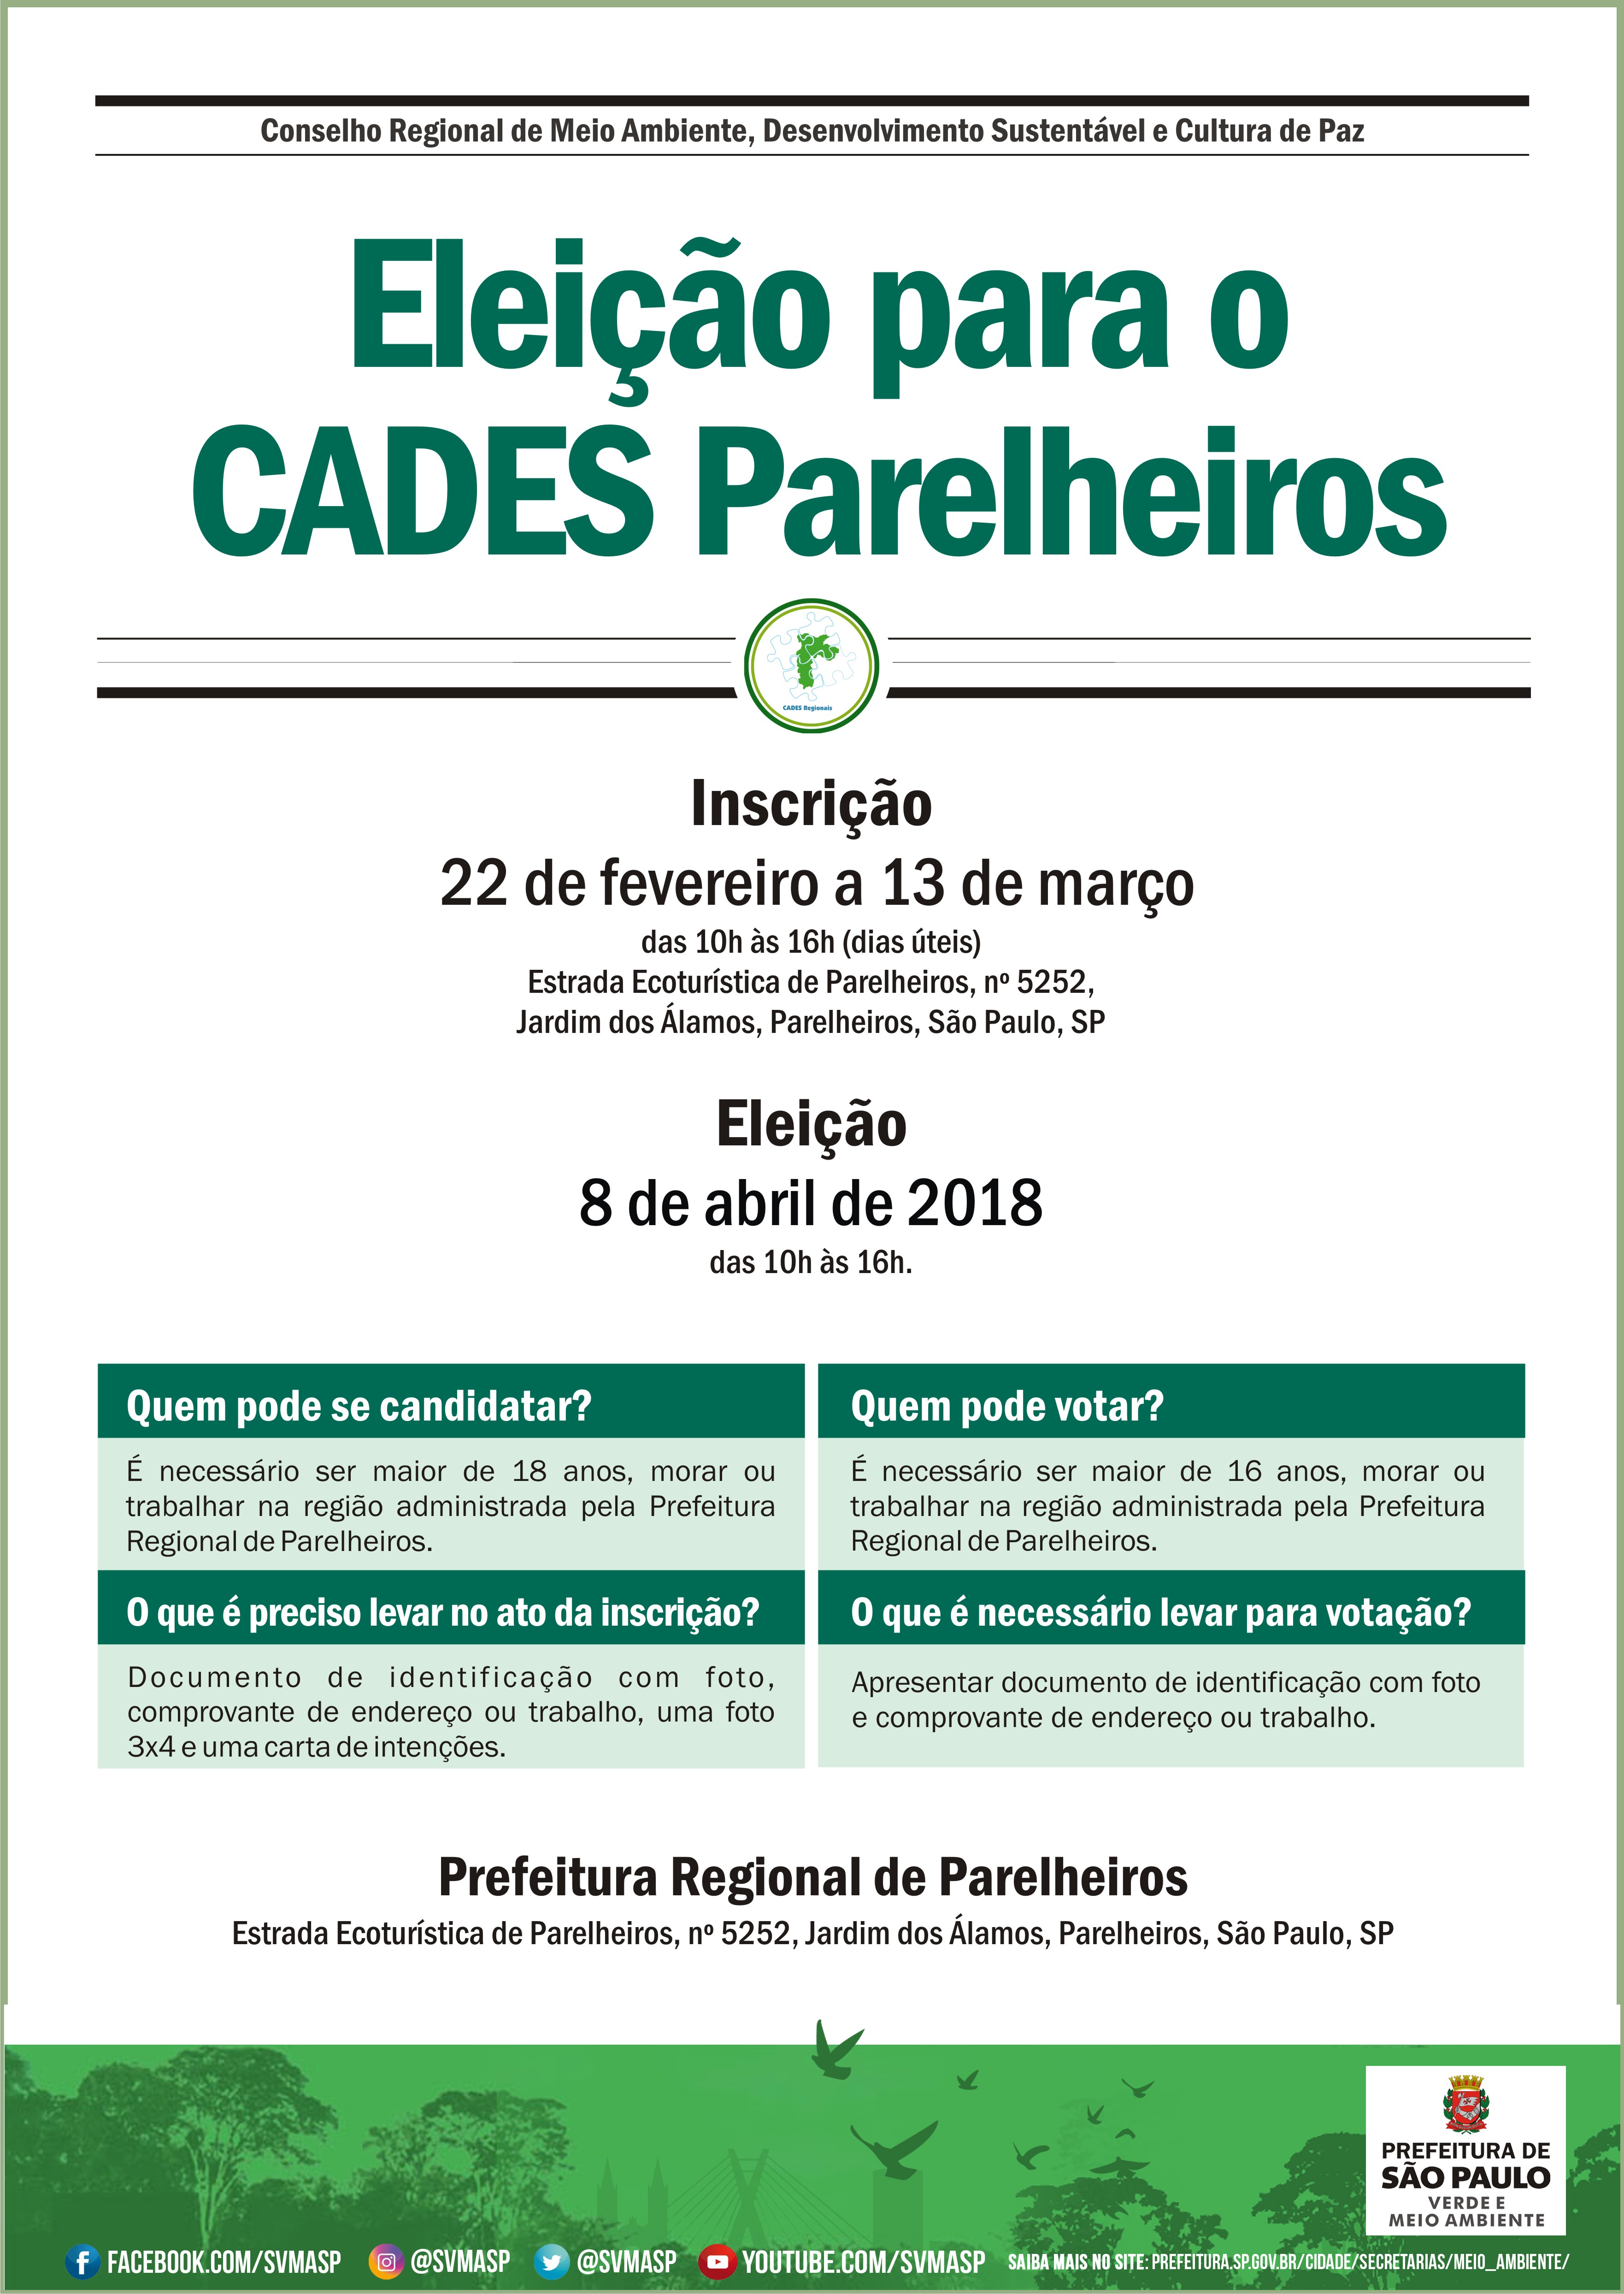 Eleições CADES Parelheiros 2018